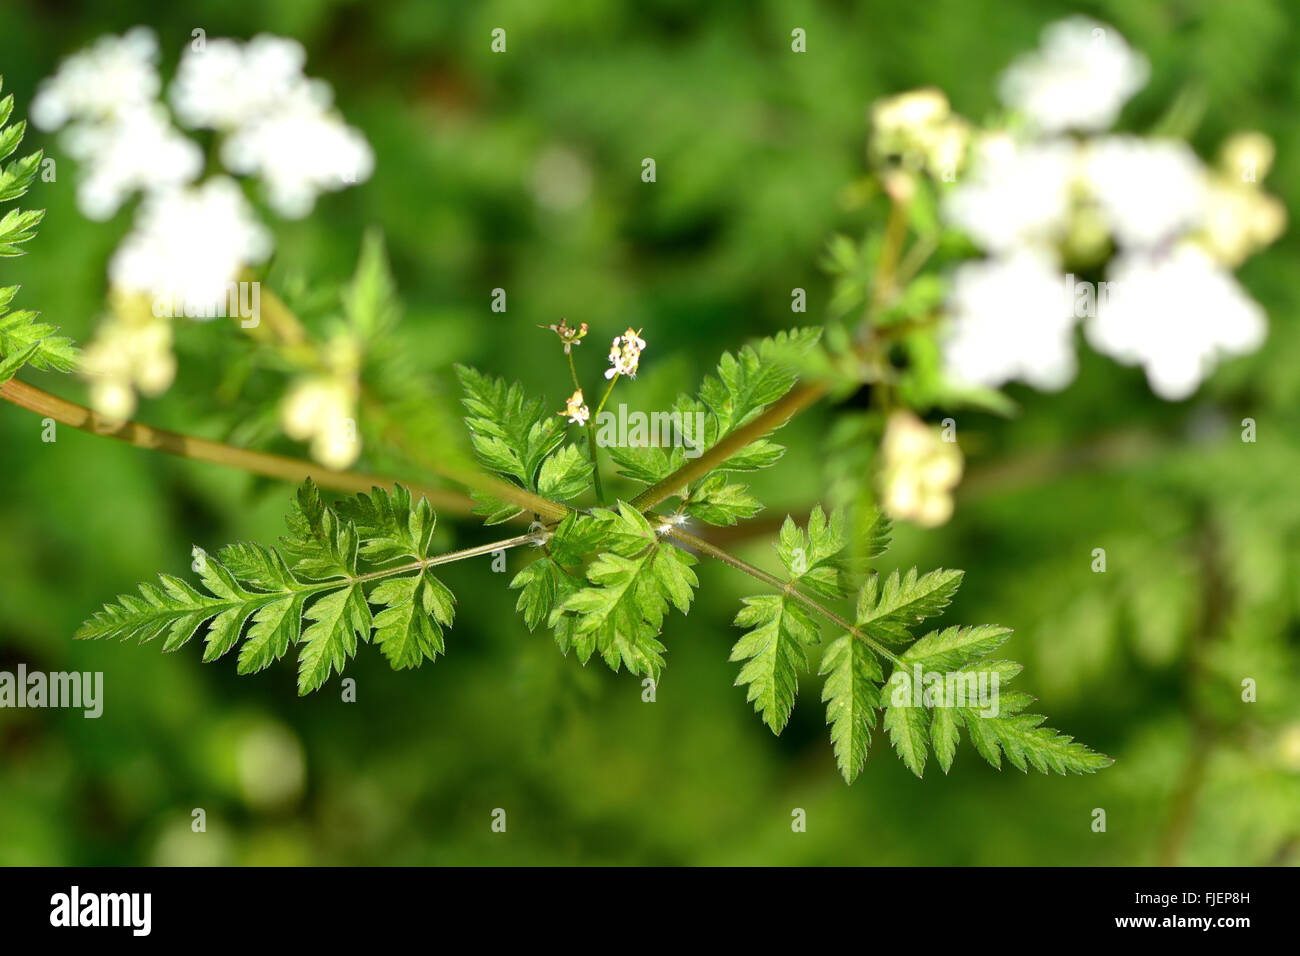 Kuh Petersilie (Anthriscus Sylvestris). Pflanzen Sie in der Karotte-Familie (Apiaceae), Blätter und Dolde weißer Blüten zeigen. Stockfoto